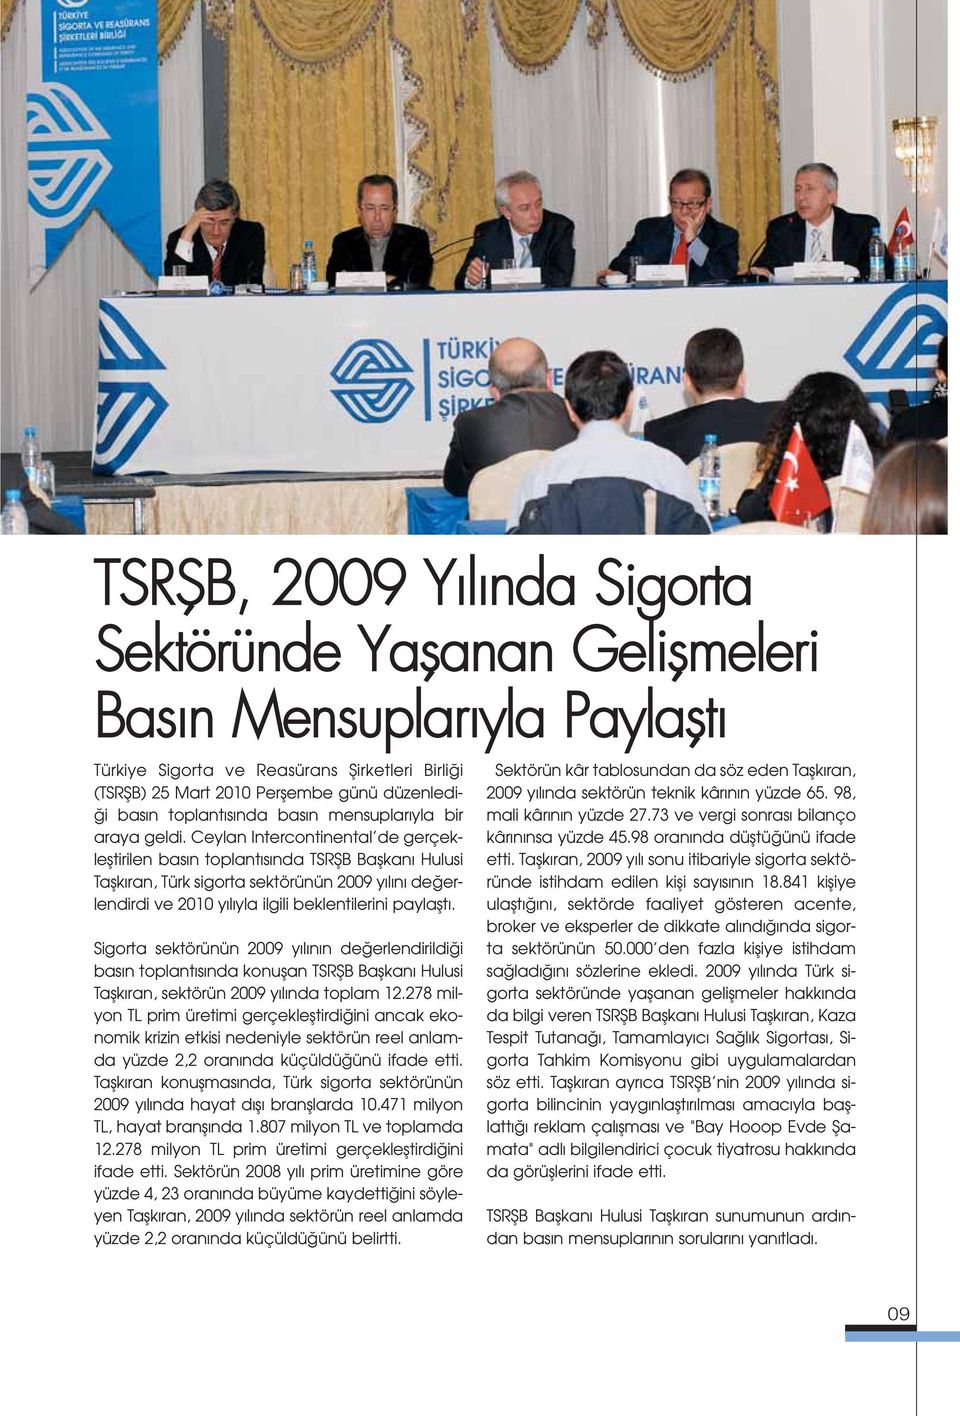 Ceylan Intercontinental de gerçeklefltirilen bas n toplant s nda TSRfiB Baflkan Hulusi Taflk ran, Türk sigorta sektörünün 2009 y l n de erlendirdi ve 2010 y l yla ilgili beklentilerini paylaflt.